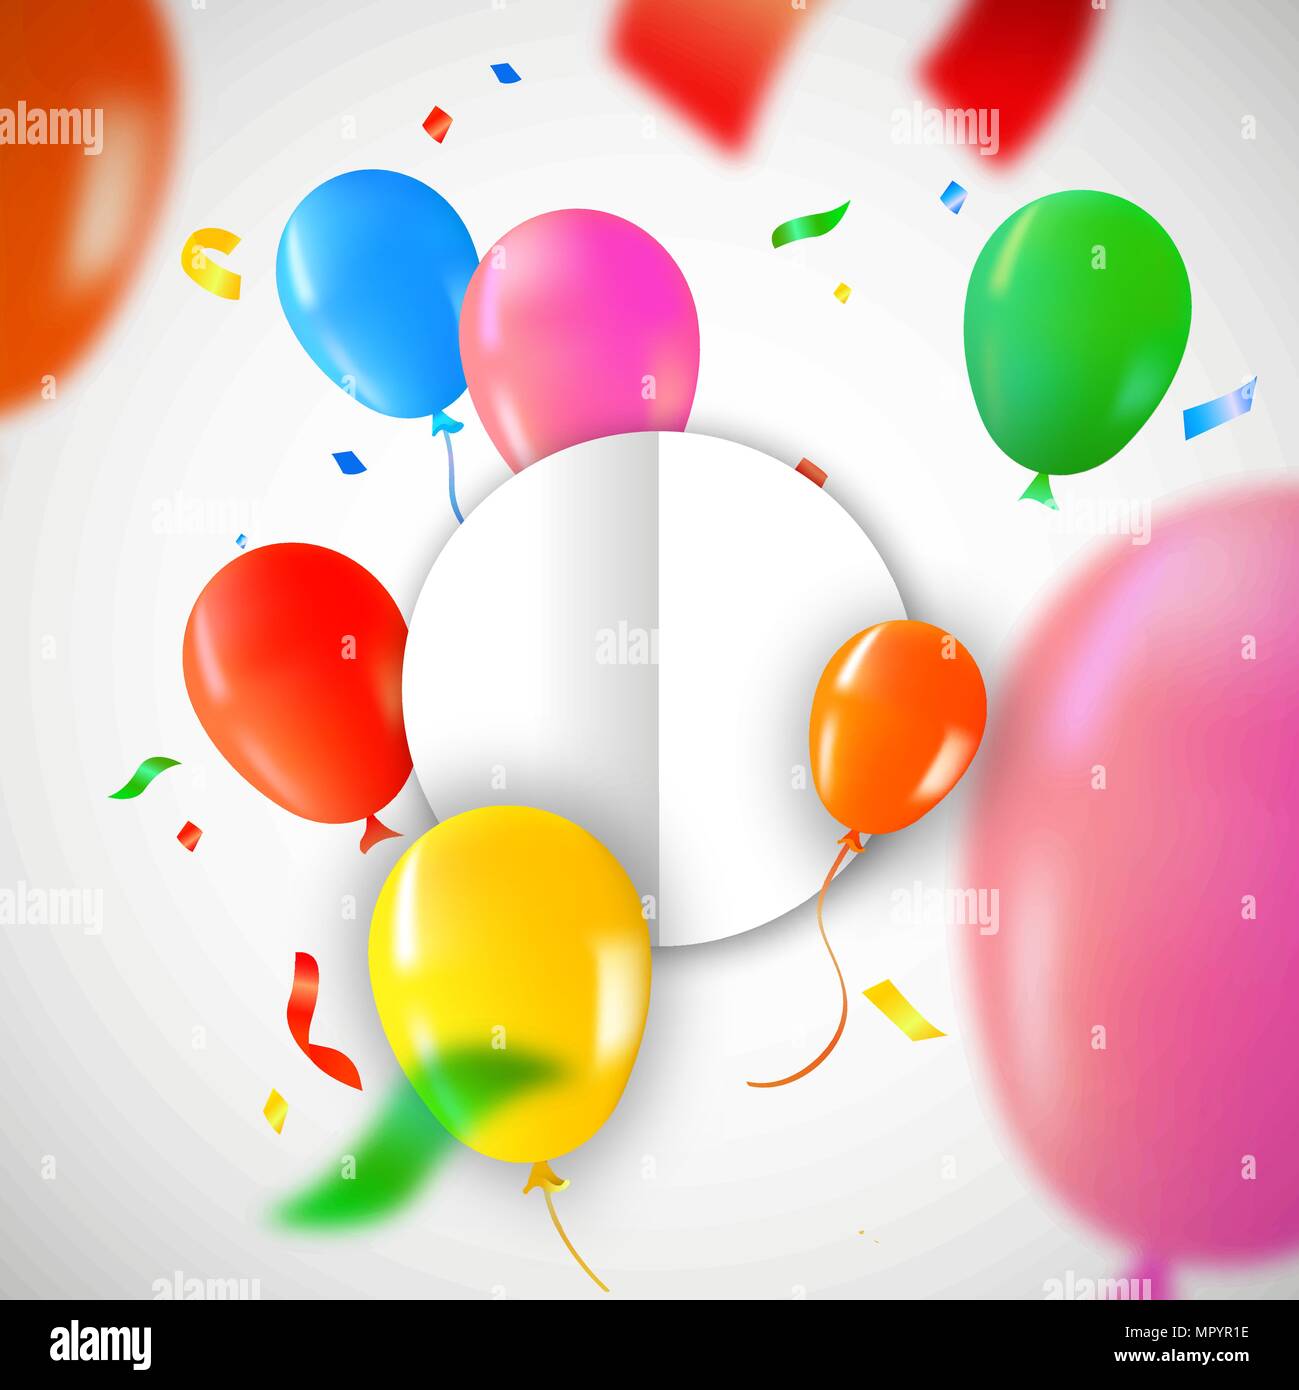 Geburtstag Luftballons mit Kreis Karte Vorlage für besondere Botschaft. Bunte party Konfetti Dekoration und Kopieren. EPS 10 Vektor. Stock Vektor